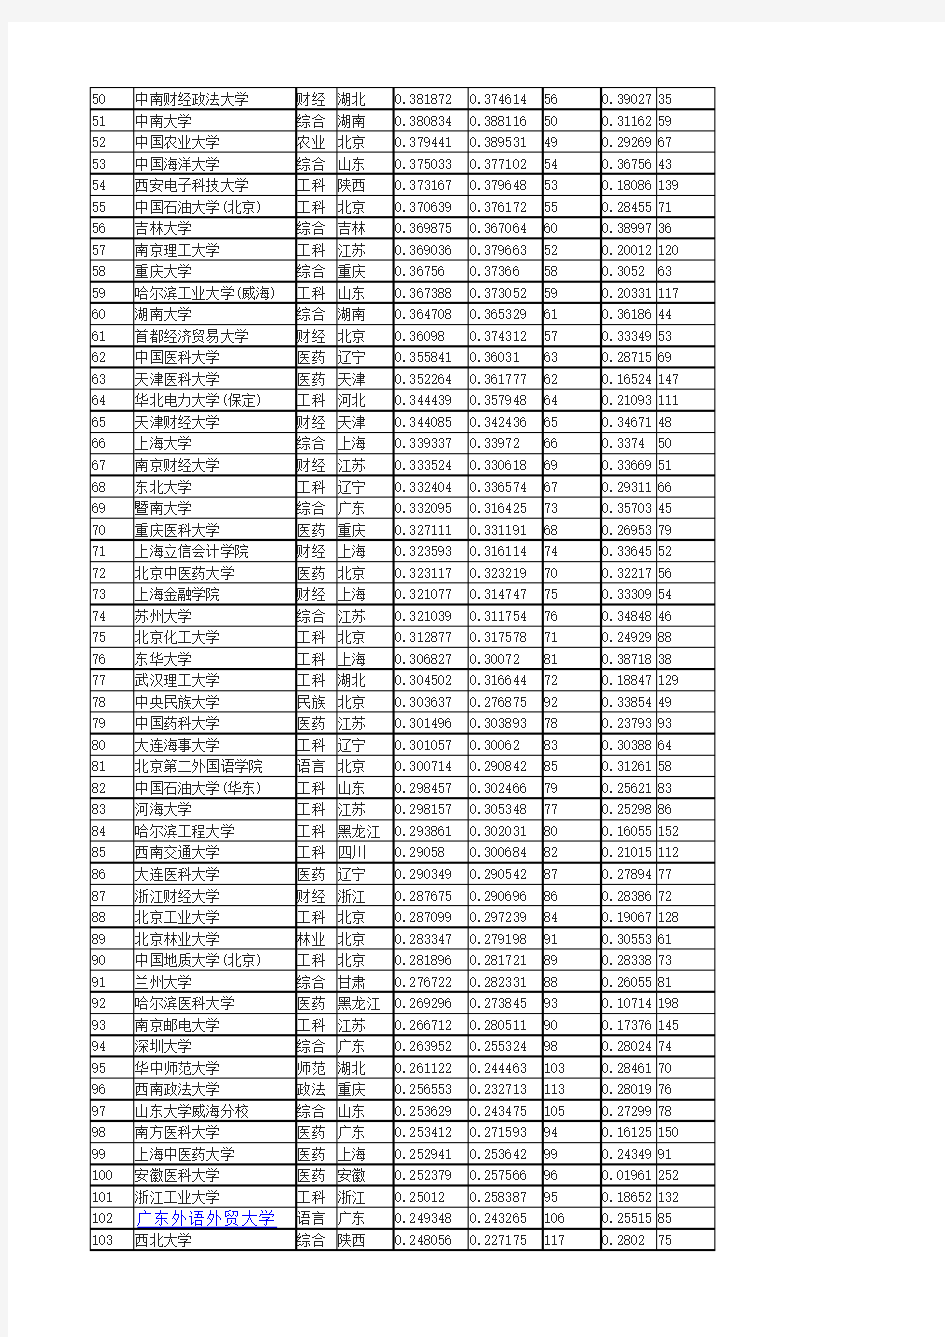 2017中国大学录取分数线排行榜(最新最全统计分析)